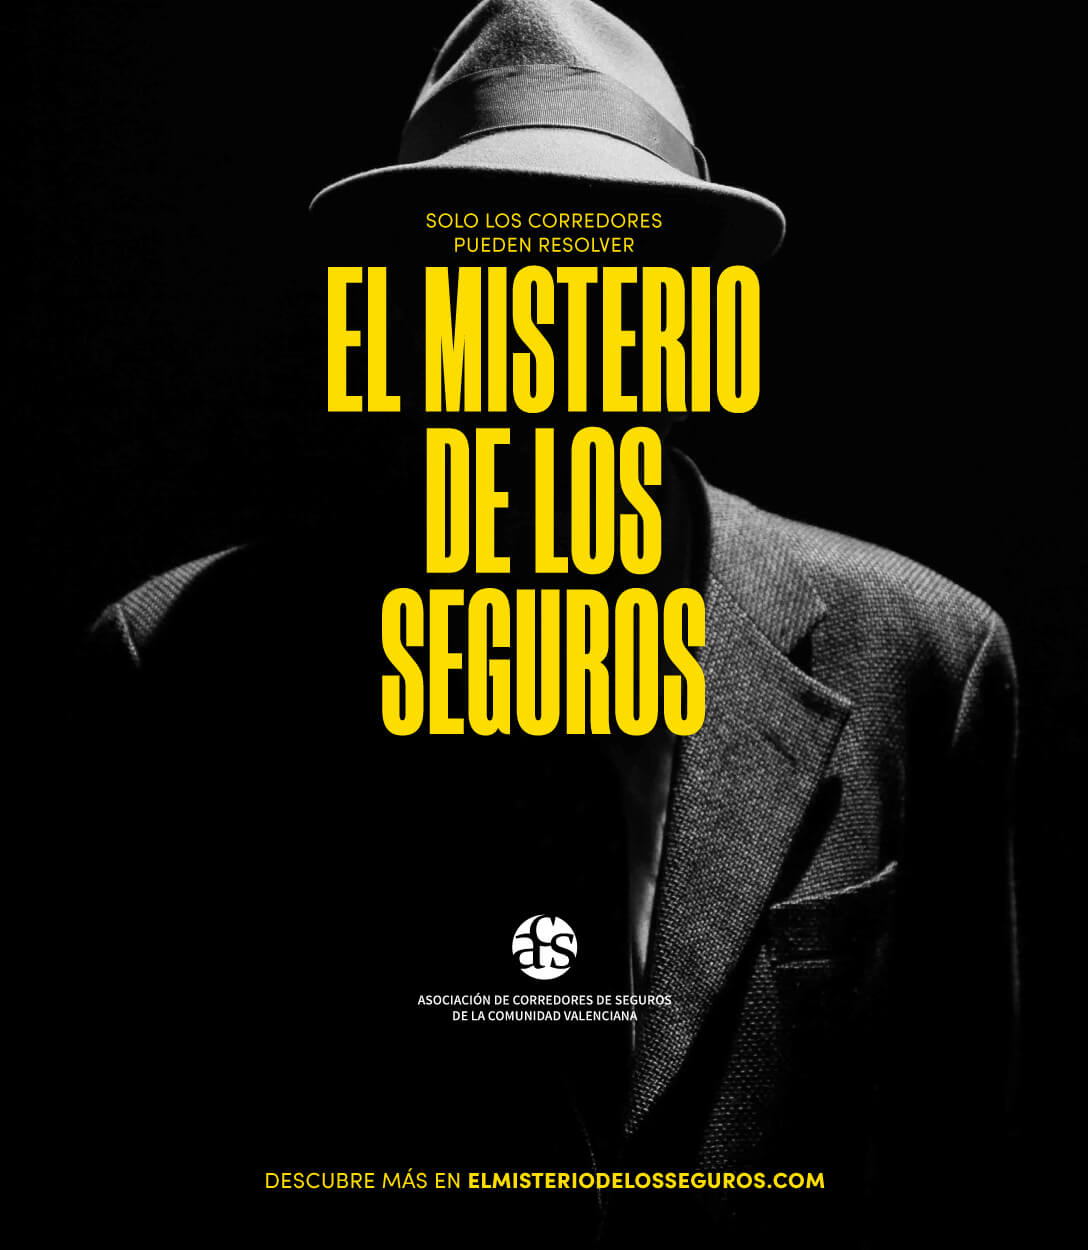 Cartle del vídeo El Misterio de los Seguros, hombre con sombrero y chaqueta al que no se le ve el rostro